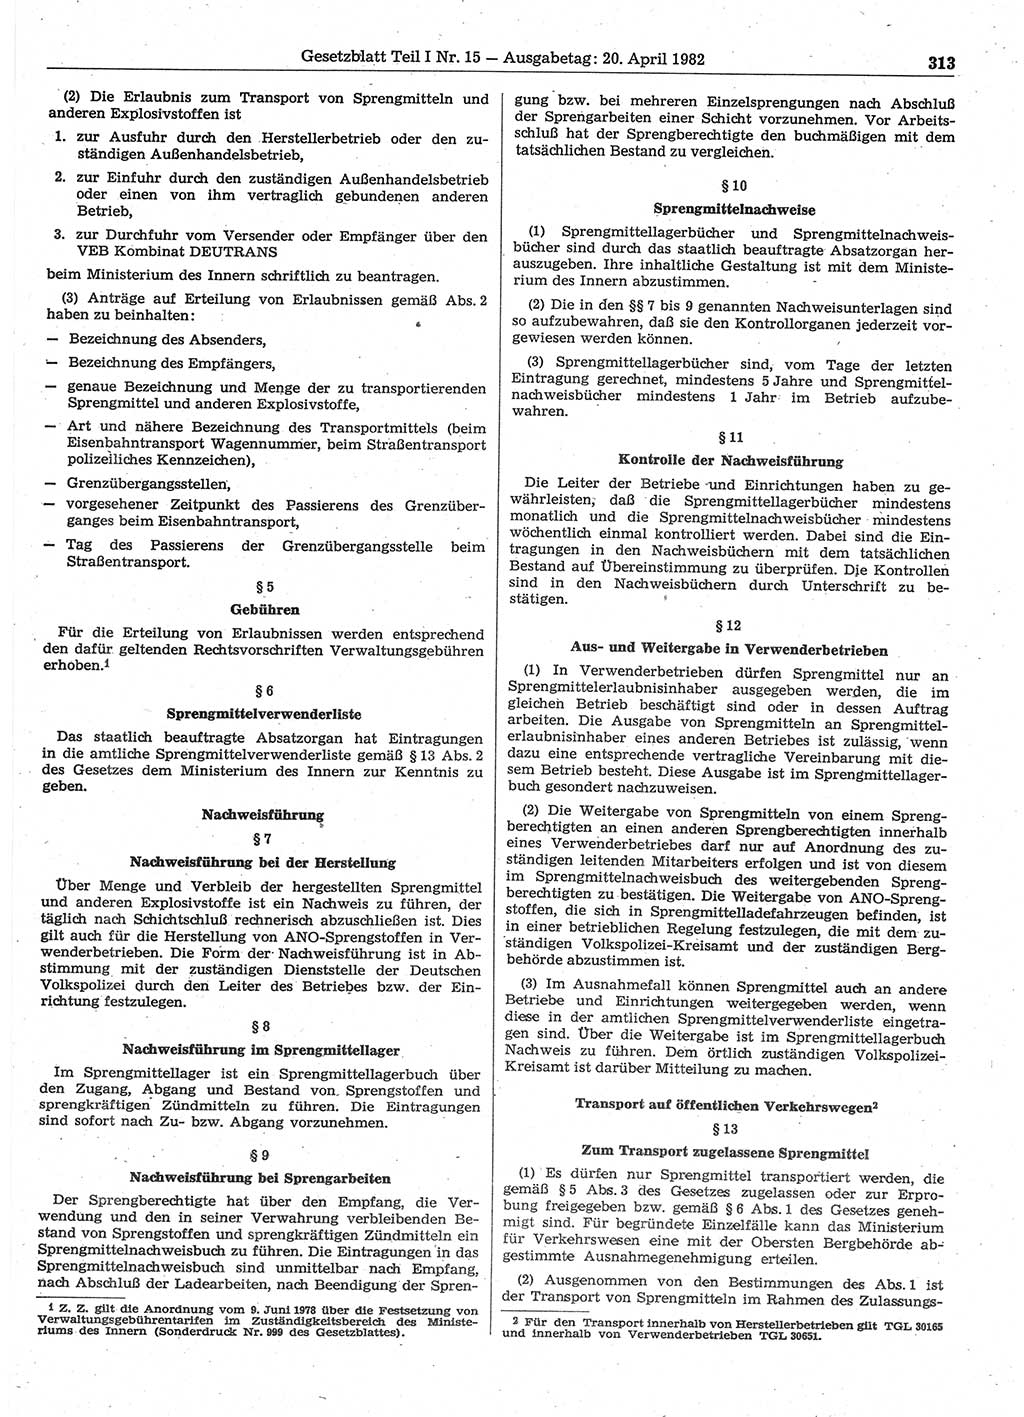 Gesetzblatt (GBl.) der Deutschen Demokratischen Republik (DDR) Teil Ⅰ 1982, Seite 313 (GBl. DDR Ⅰ 1982, S. 313)